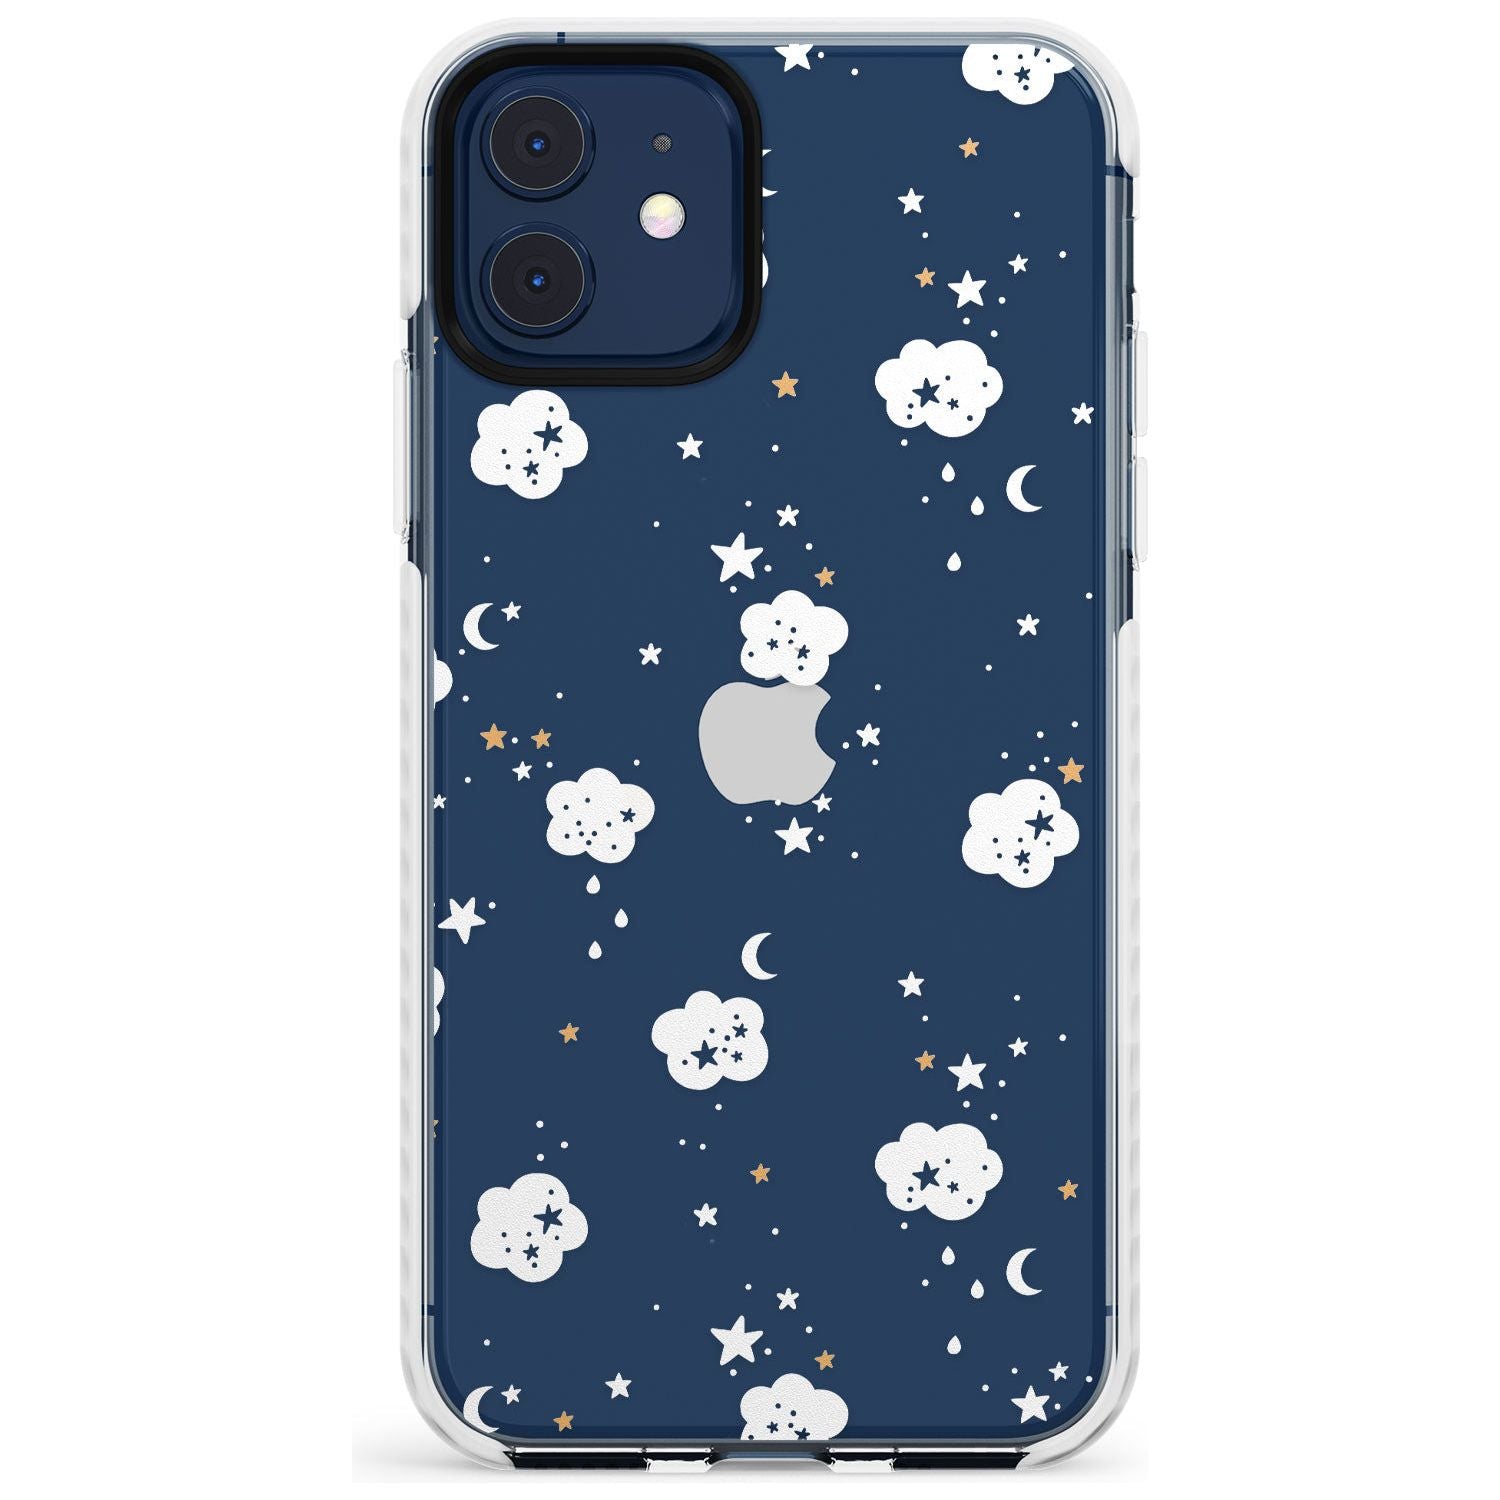 Stars & Clouds Slim TPU Phone Case for iPhone 11